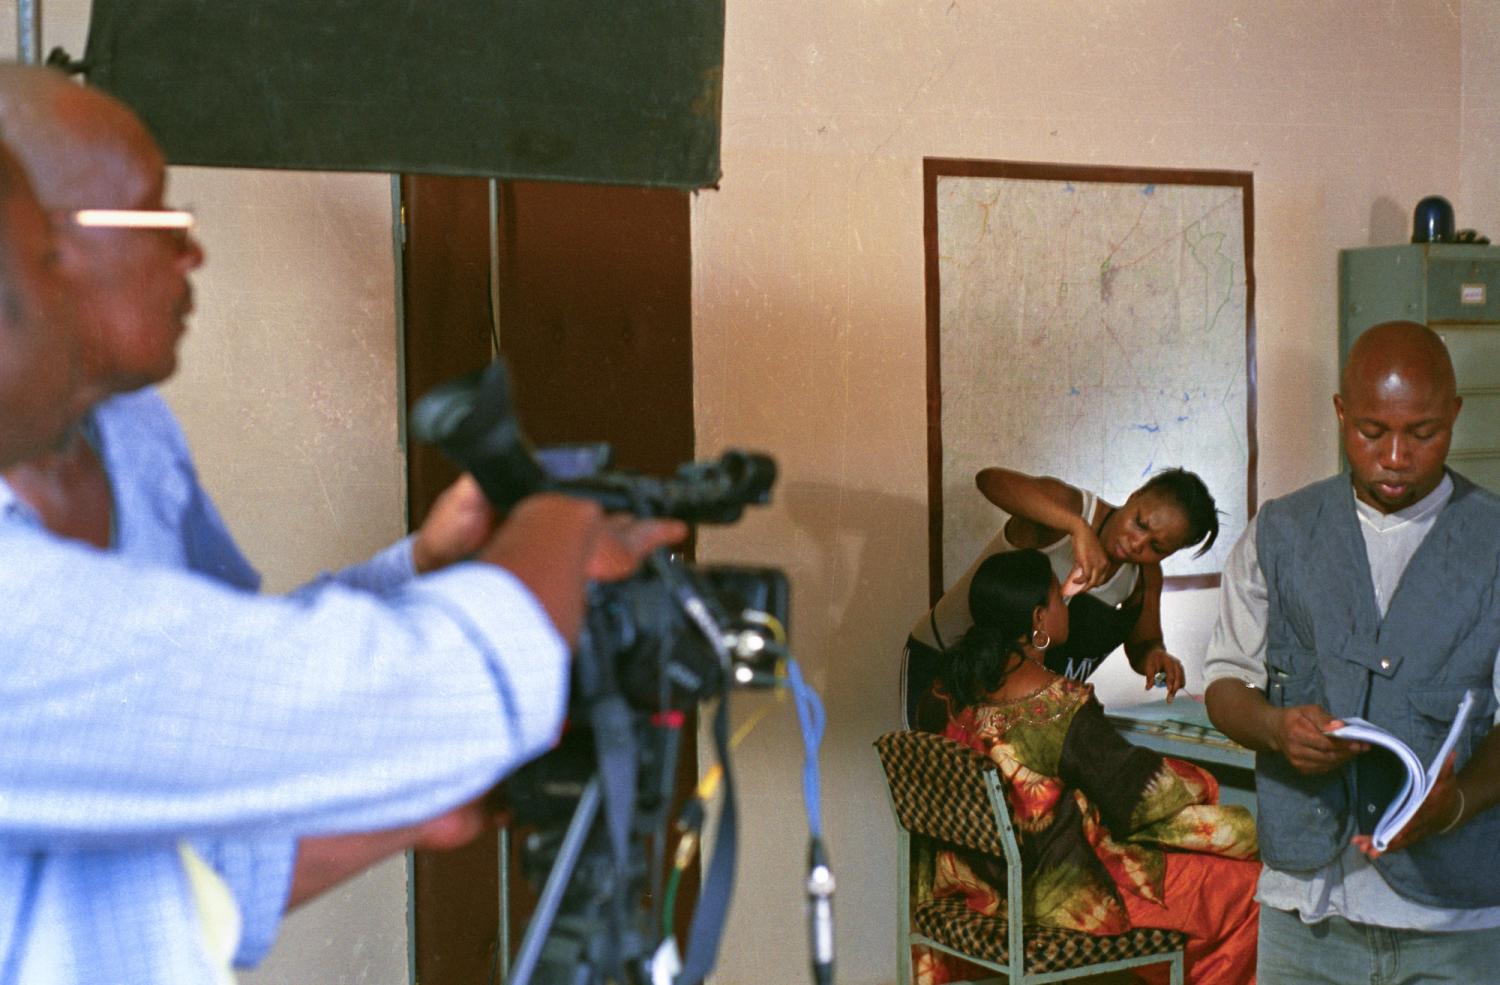 Pendant que ses collègues se préparent pour une scène, Jeanne d'Arc effectue quelques retouches de maquillage sur le visage de Laure. Ouagadougou, Burkina Faso, juin 2008.